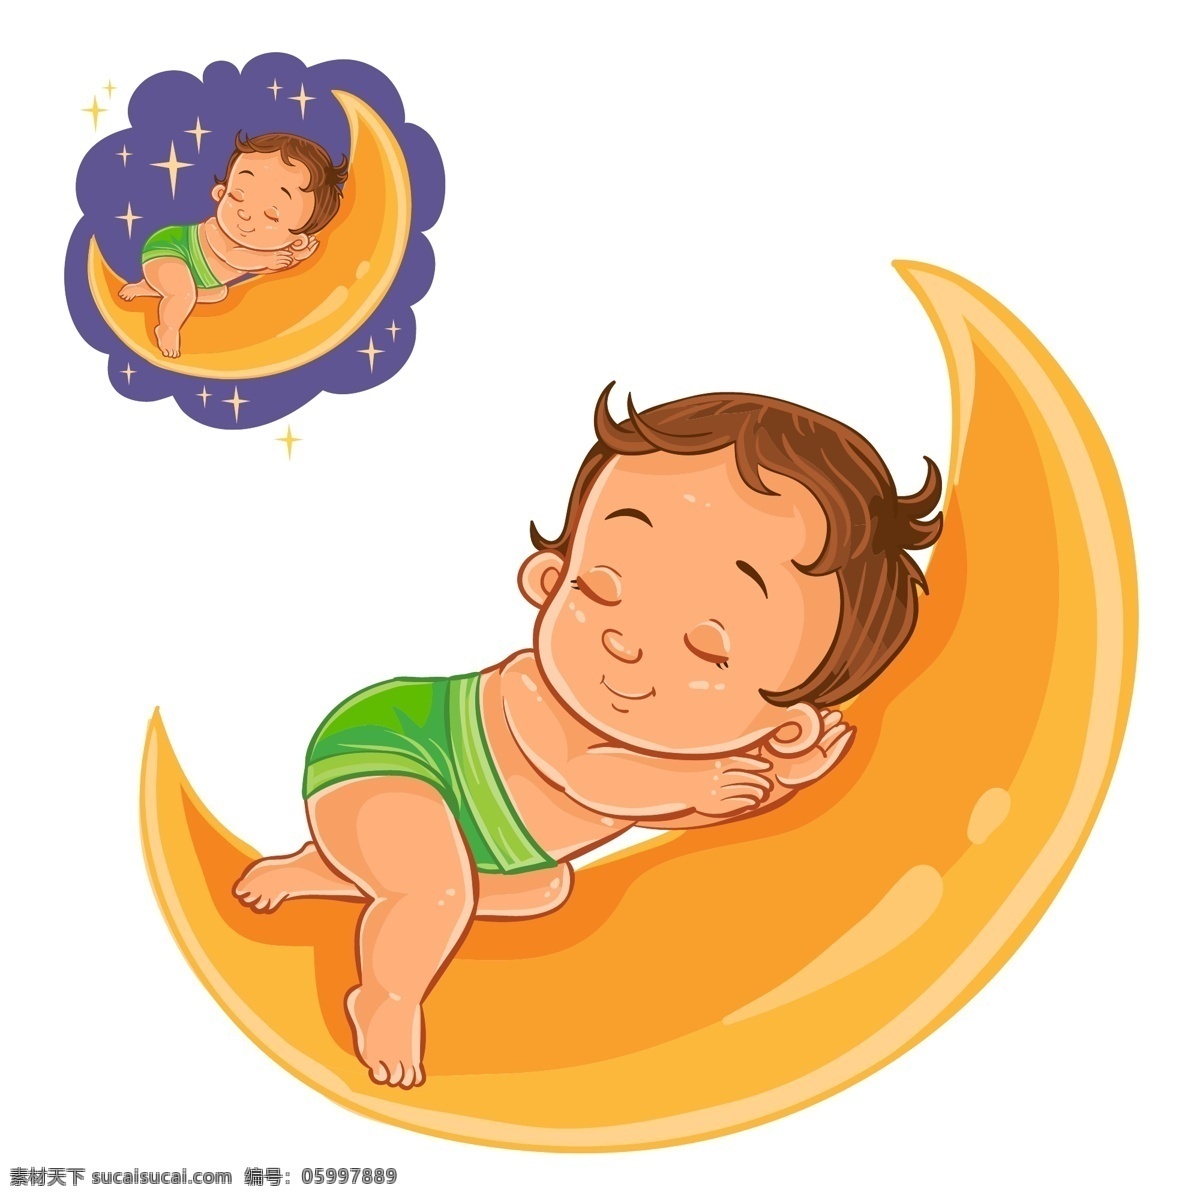 月亮 上 睡觉 小宝宝 矢量 宝宝 儿童 做梦 可爱 卡通婴幼儿 孩子 卡通插画 卡通素材 动漫动画 动漫人物